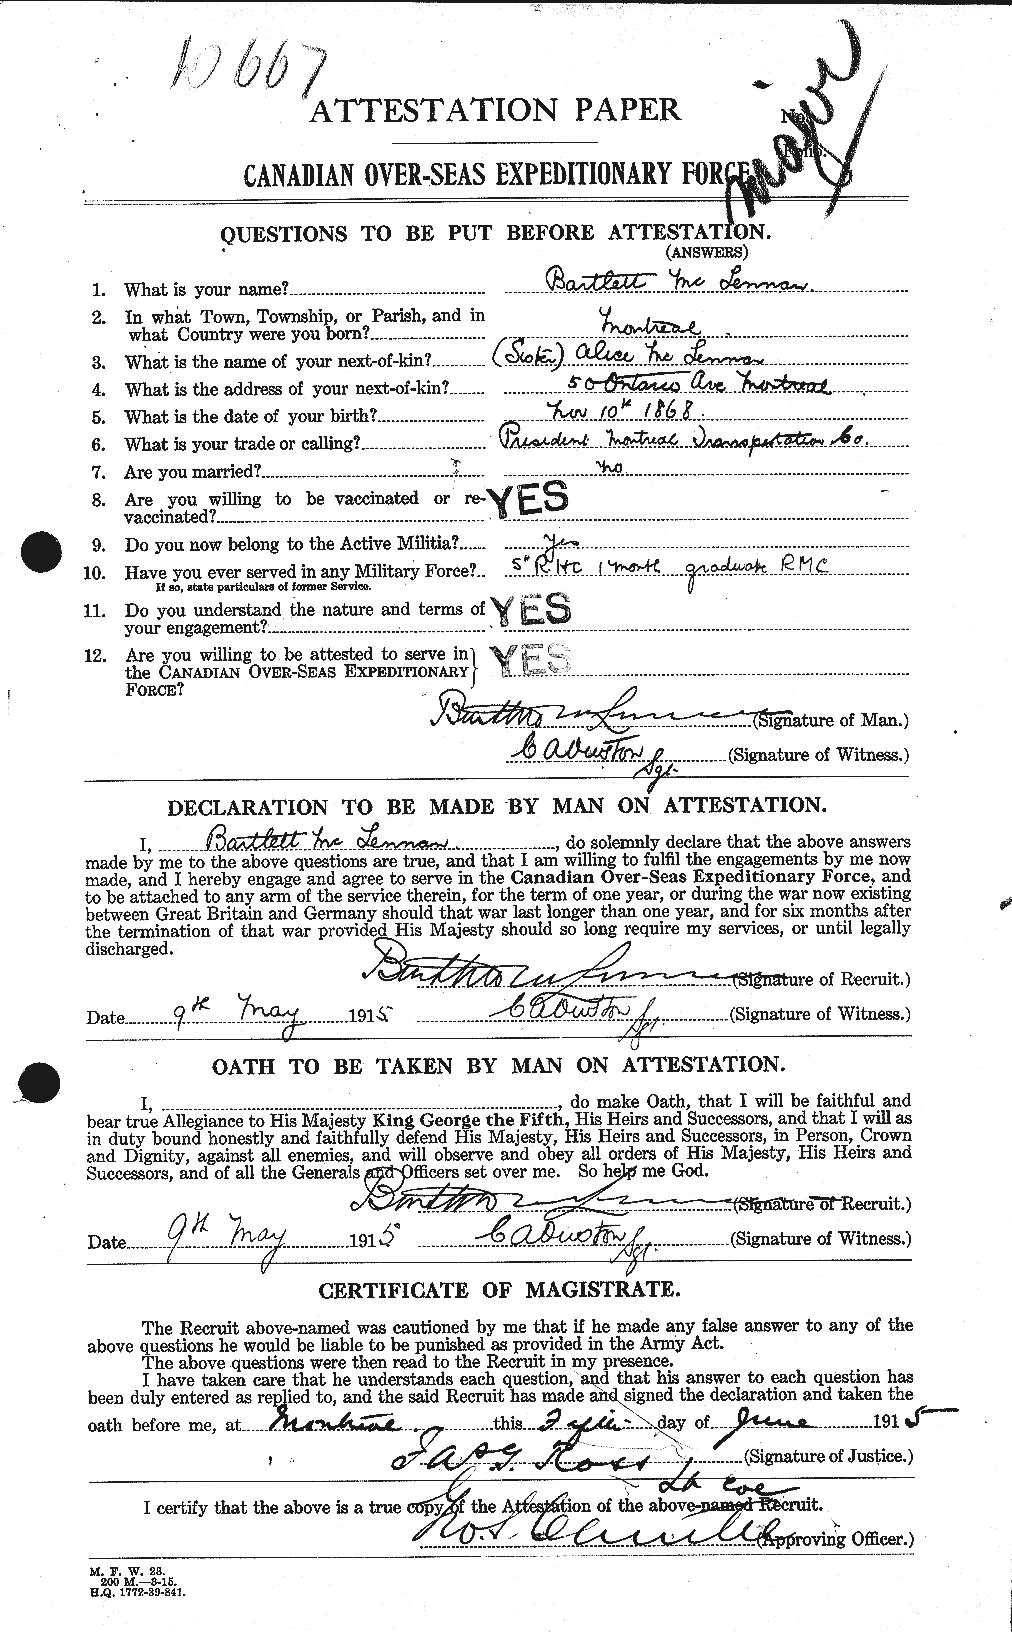 Dossiers du Personnel de la Première Guerre mondiale - CEC 534427a